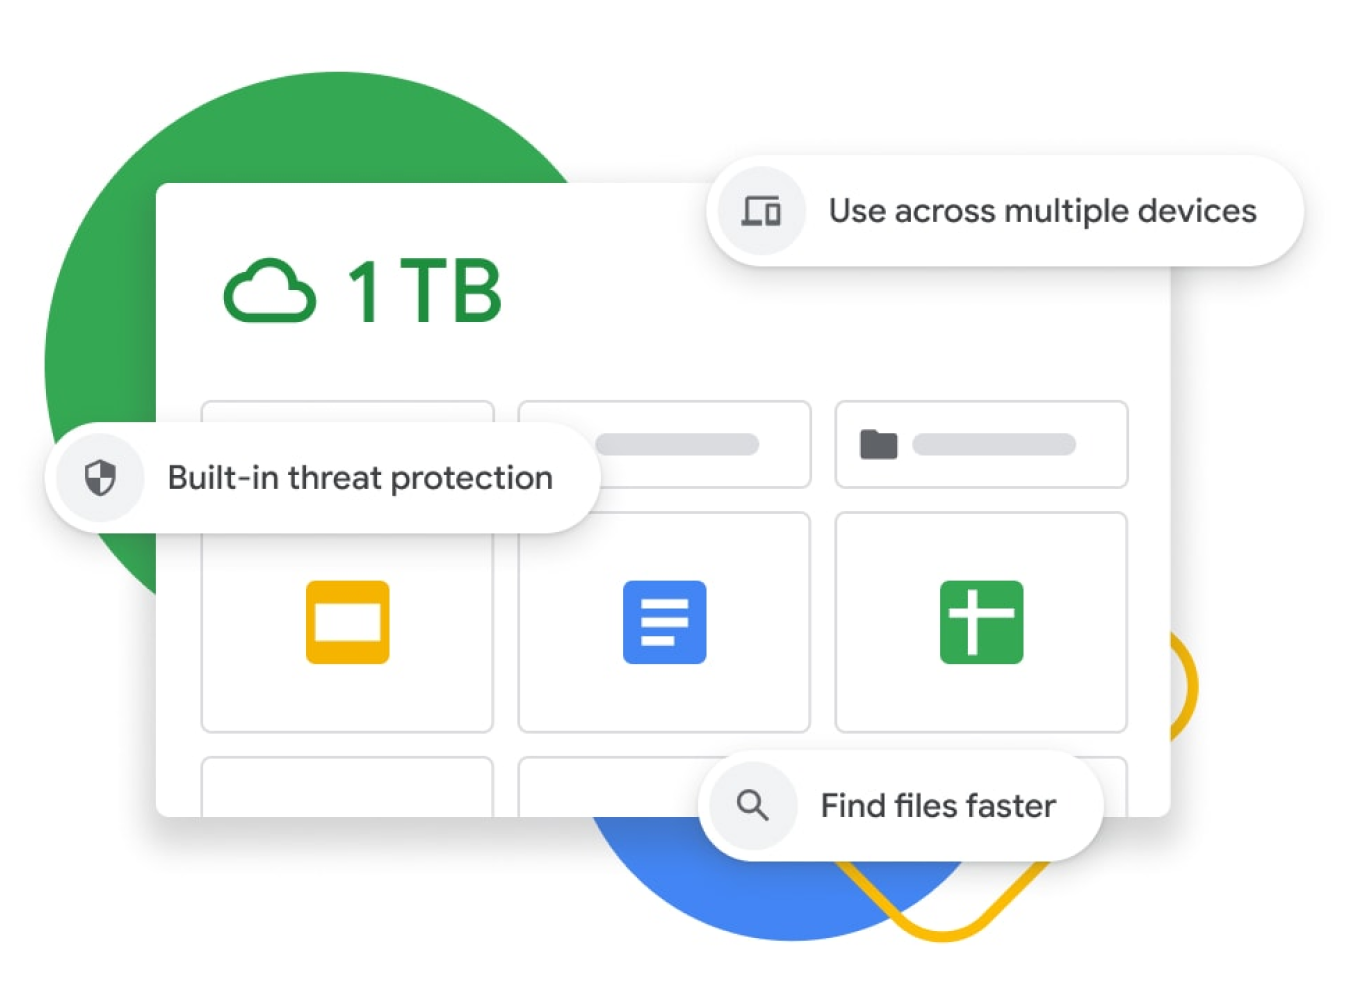 Kuva Google Driven hallintapaneelista ja ominaisuuksista, joihin kuuluu 1 Tt:n tallennustila, sisäänrakennettu uhkien torjunta, usean laitteen synkronointi sekä parannettu haku. 